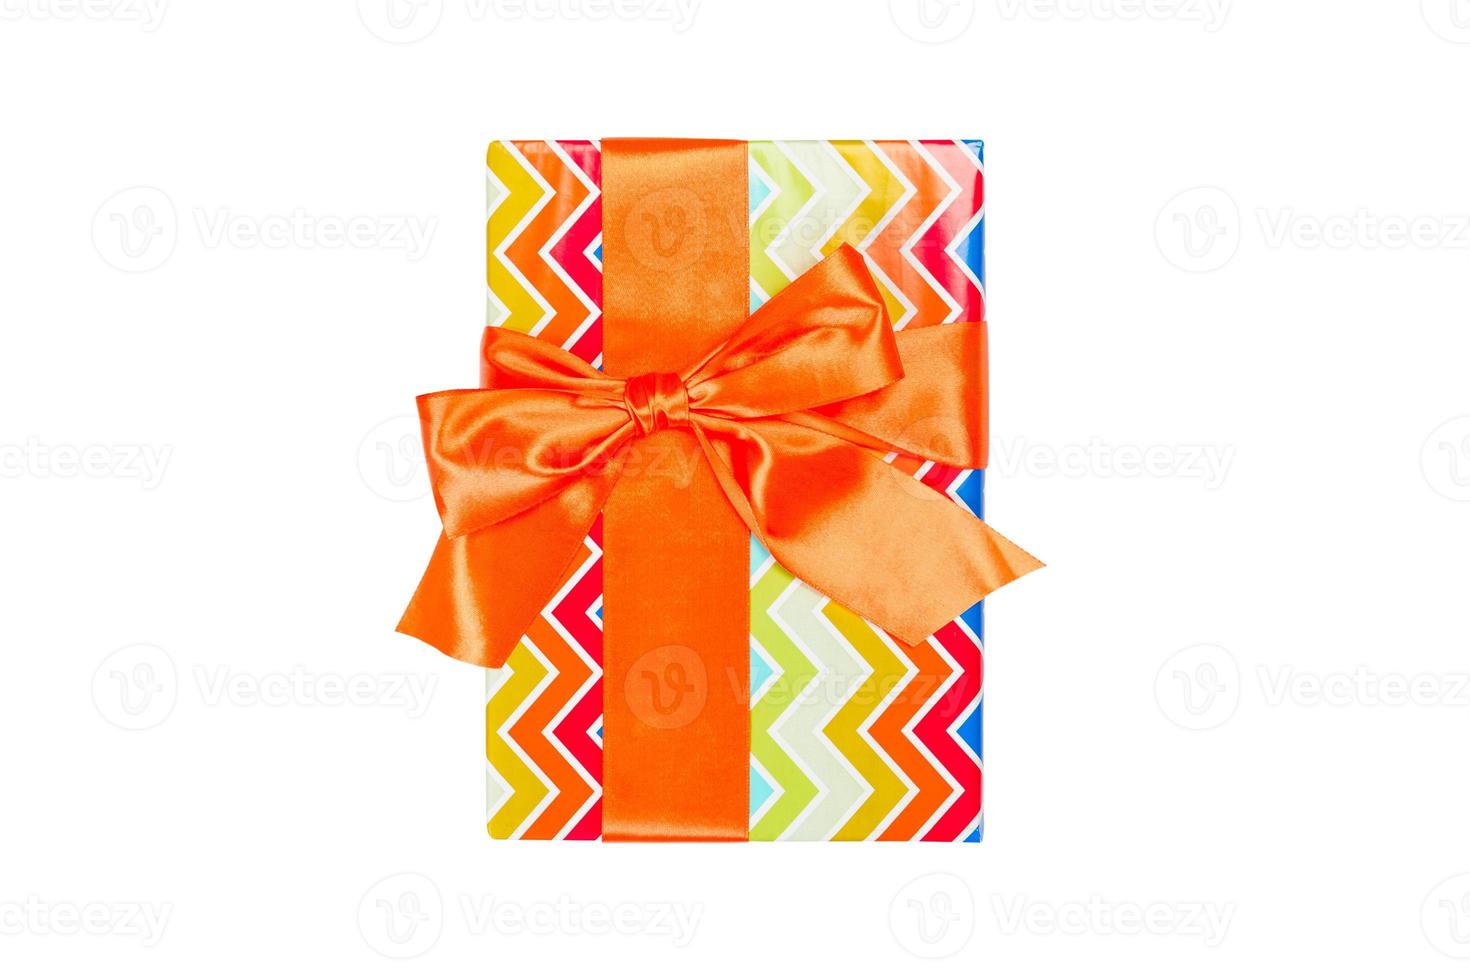 navidad u otro regalo hecho a mano en papel de colores con cinta naranja. aislado sobre fondo blanco, vista superior. concepto de caja de regalo de acción de gracias foto